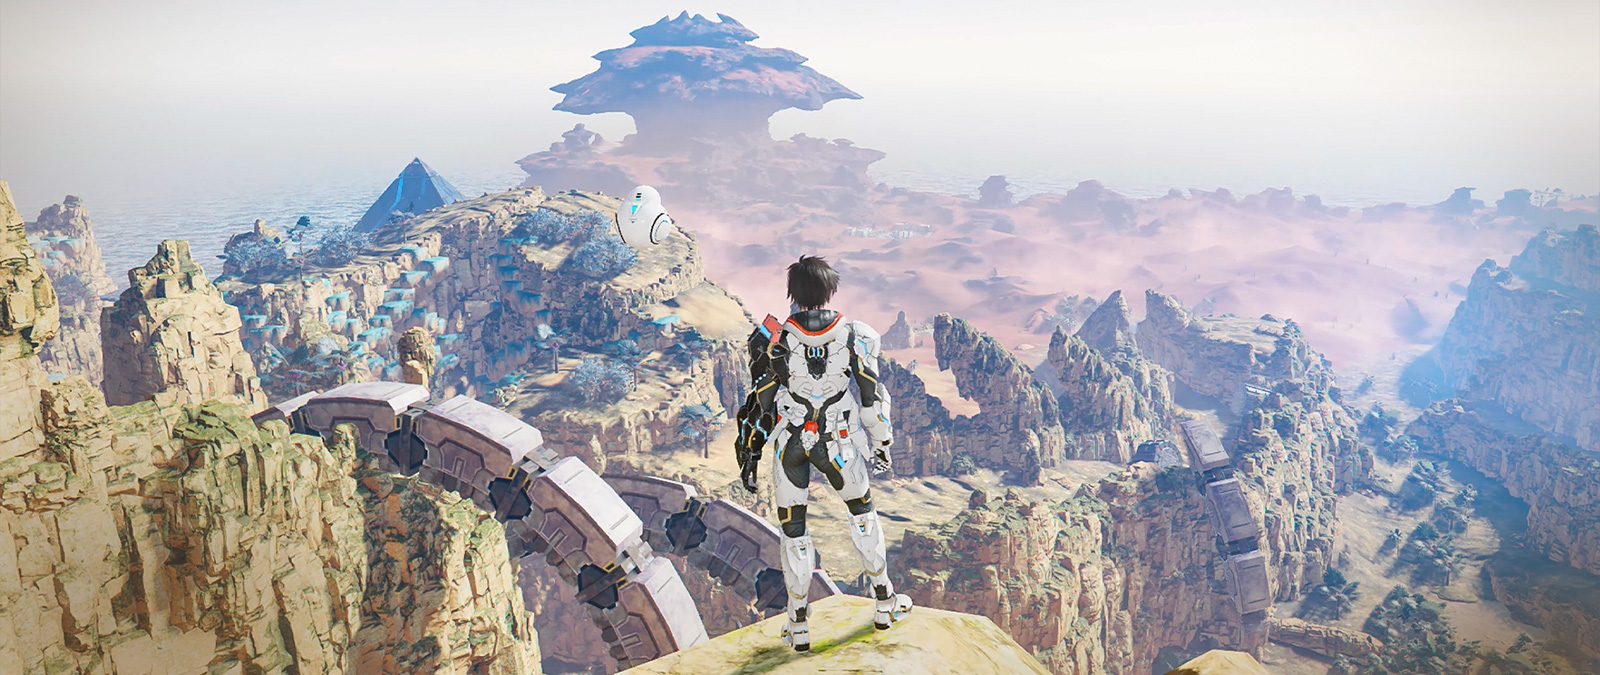 Een personage met een krachtpantser staat op een klif en kijkt uit over een vallei.